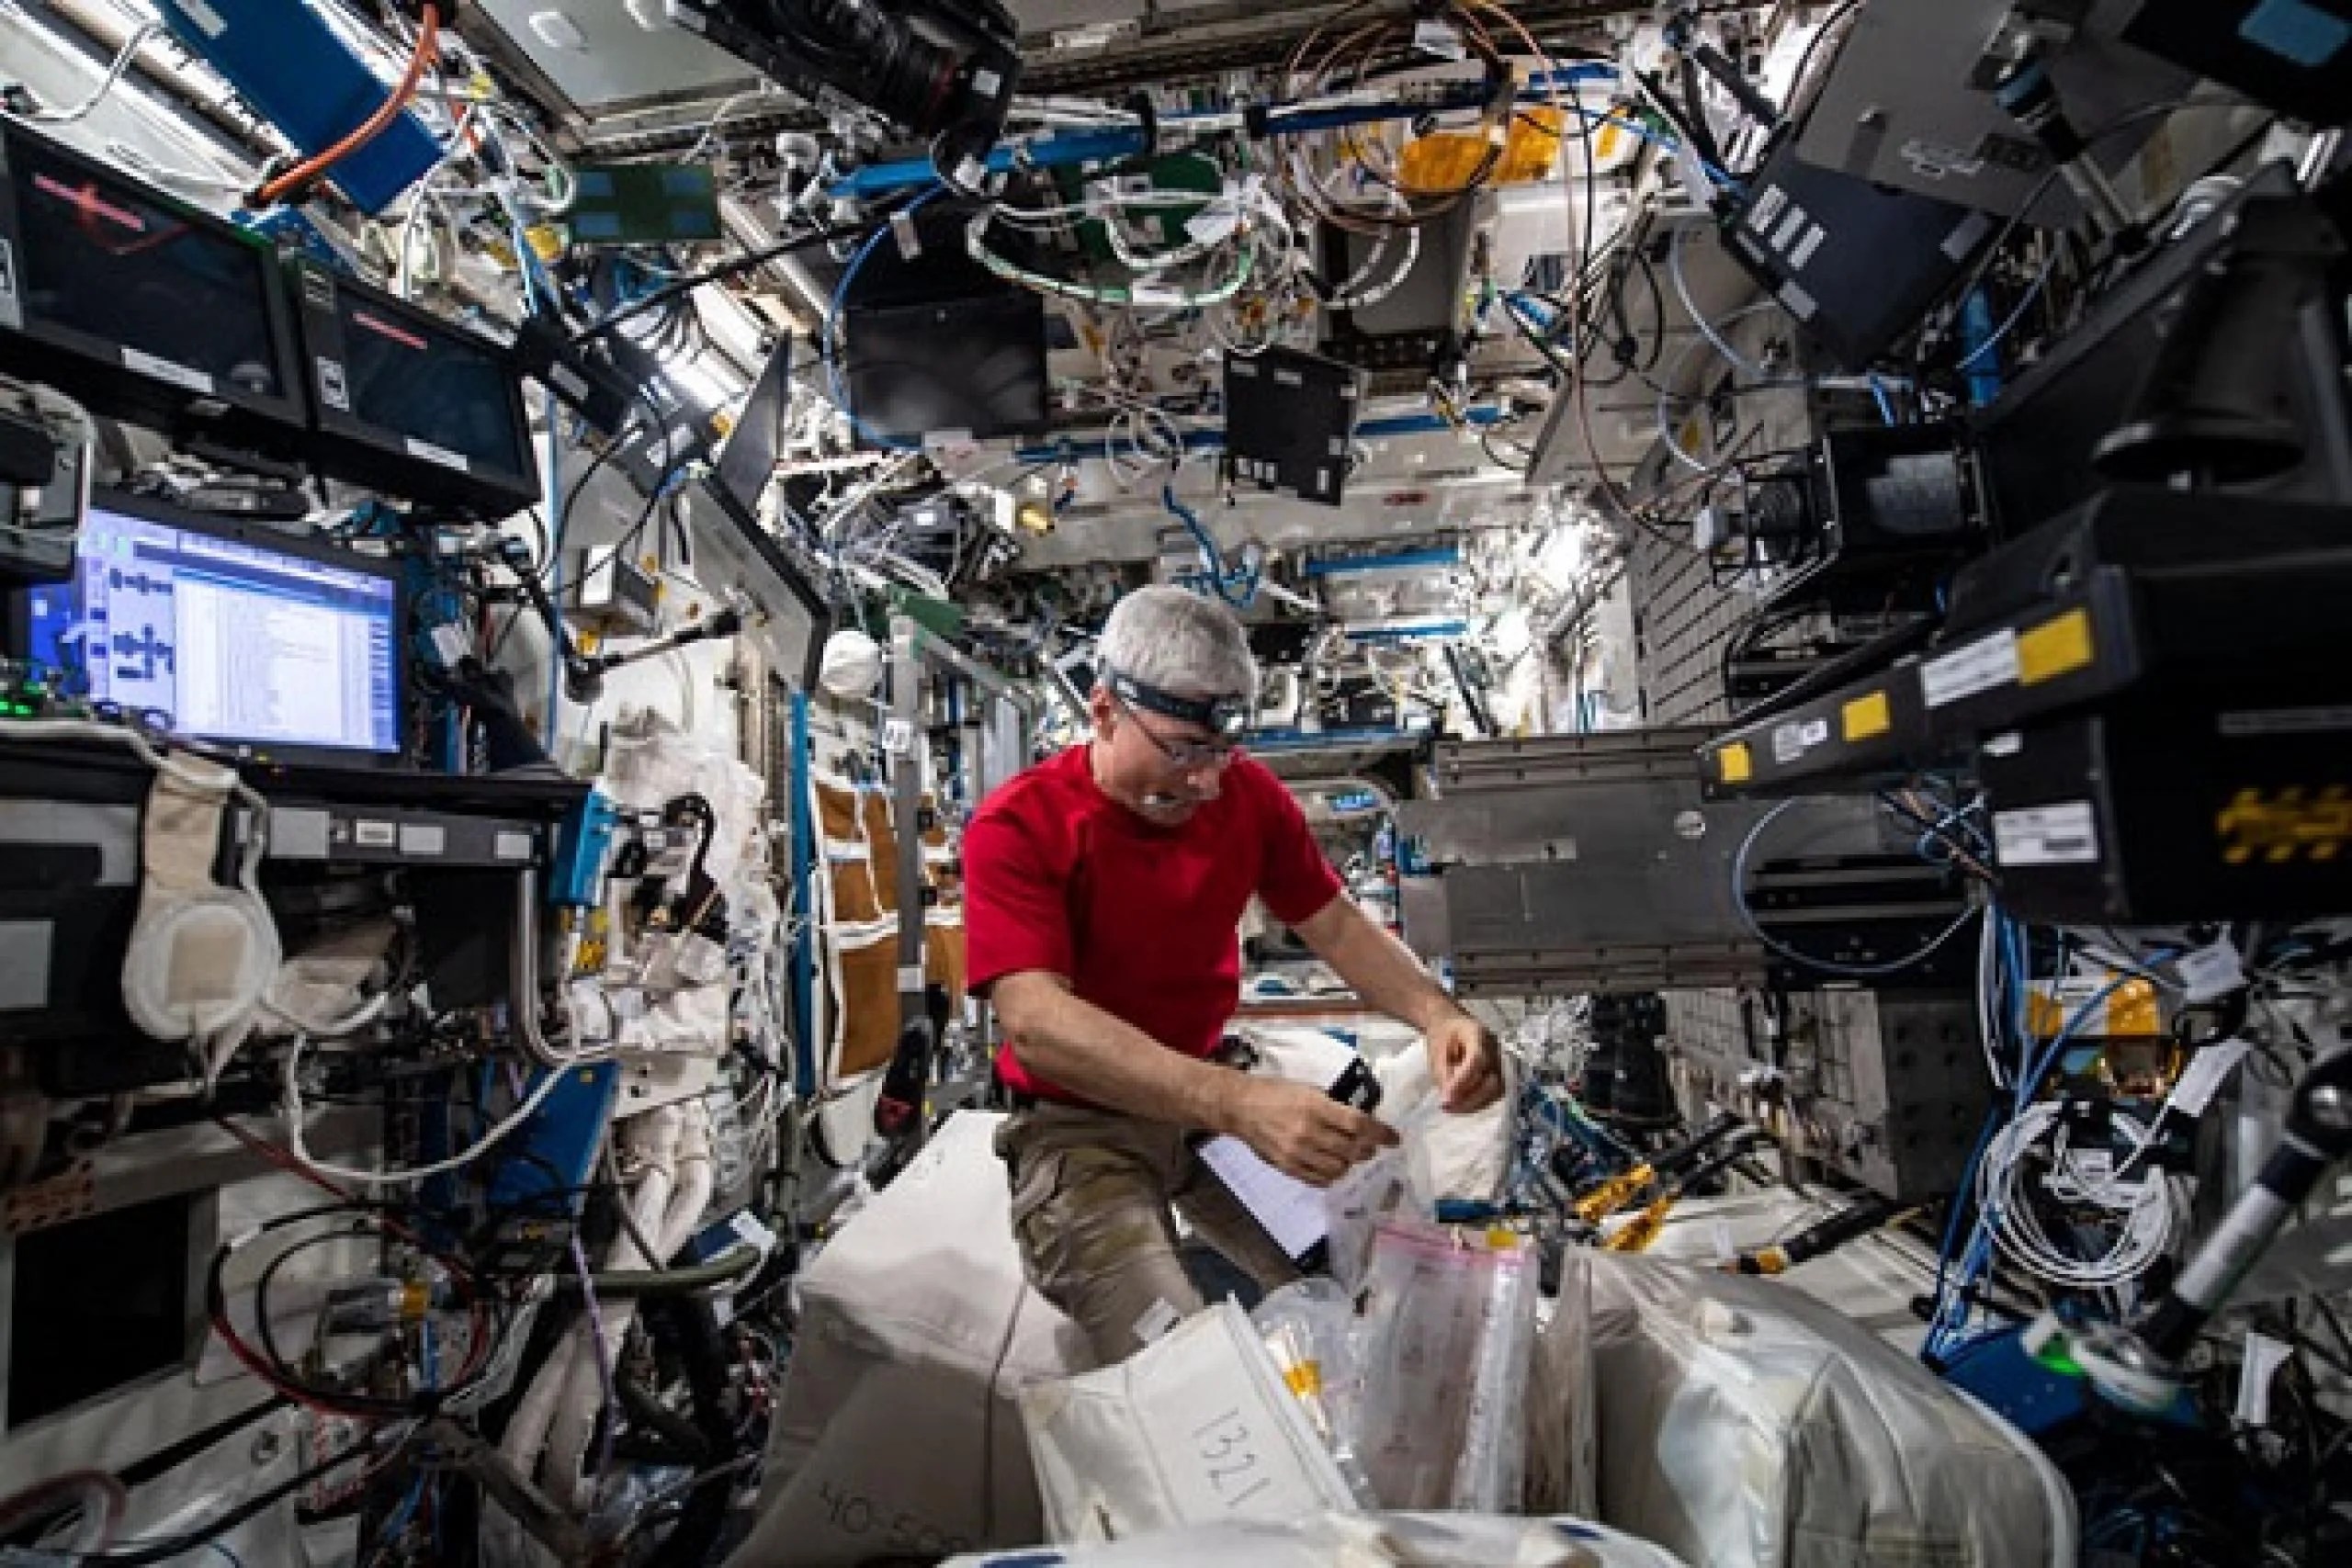 imagen de un astronauta preparando un experimento